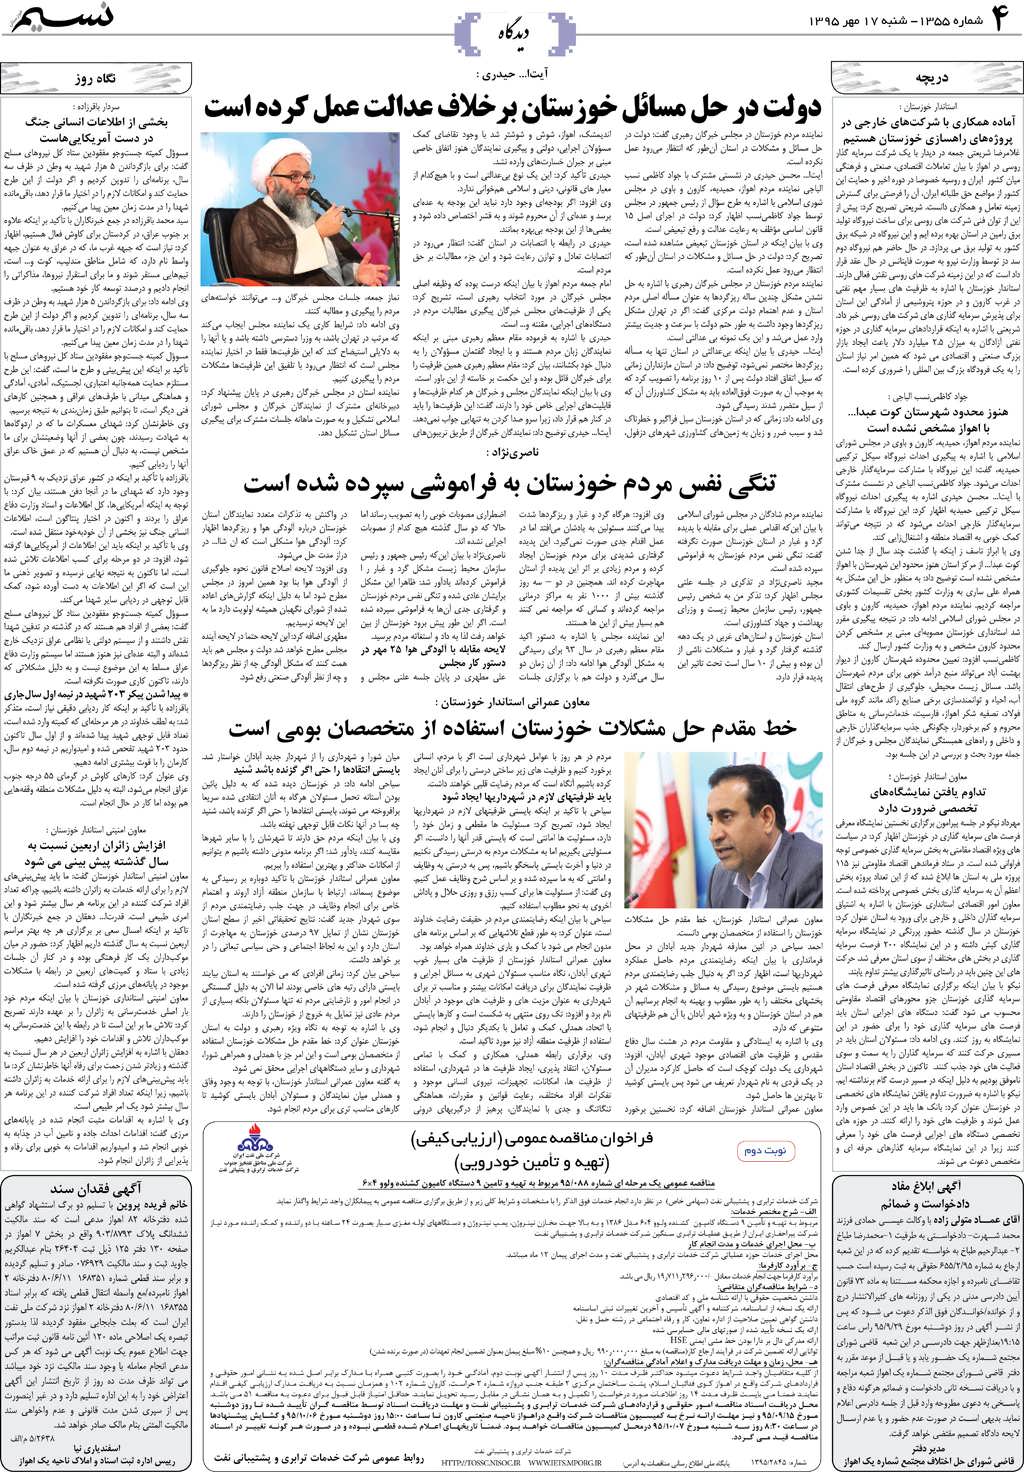 صفحه دیدگاه روزنامه نسیم شماره 1355